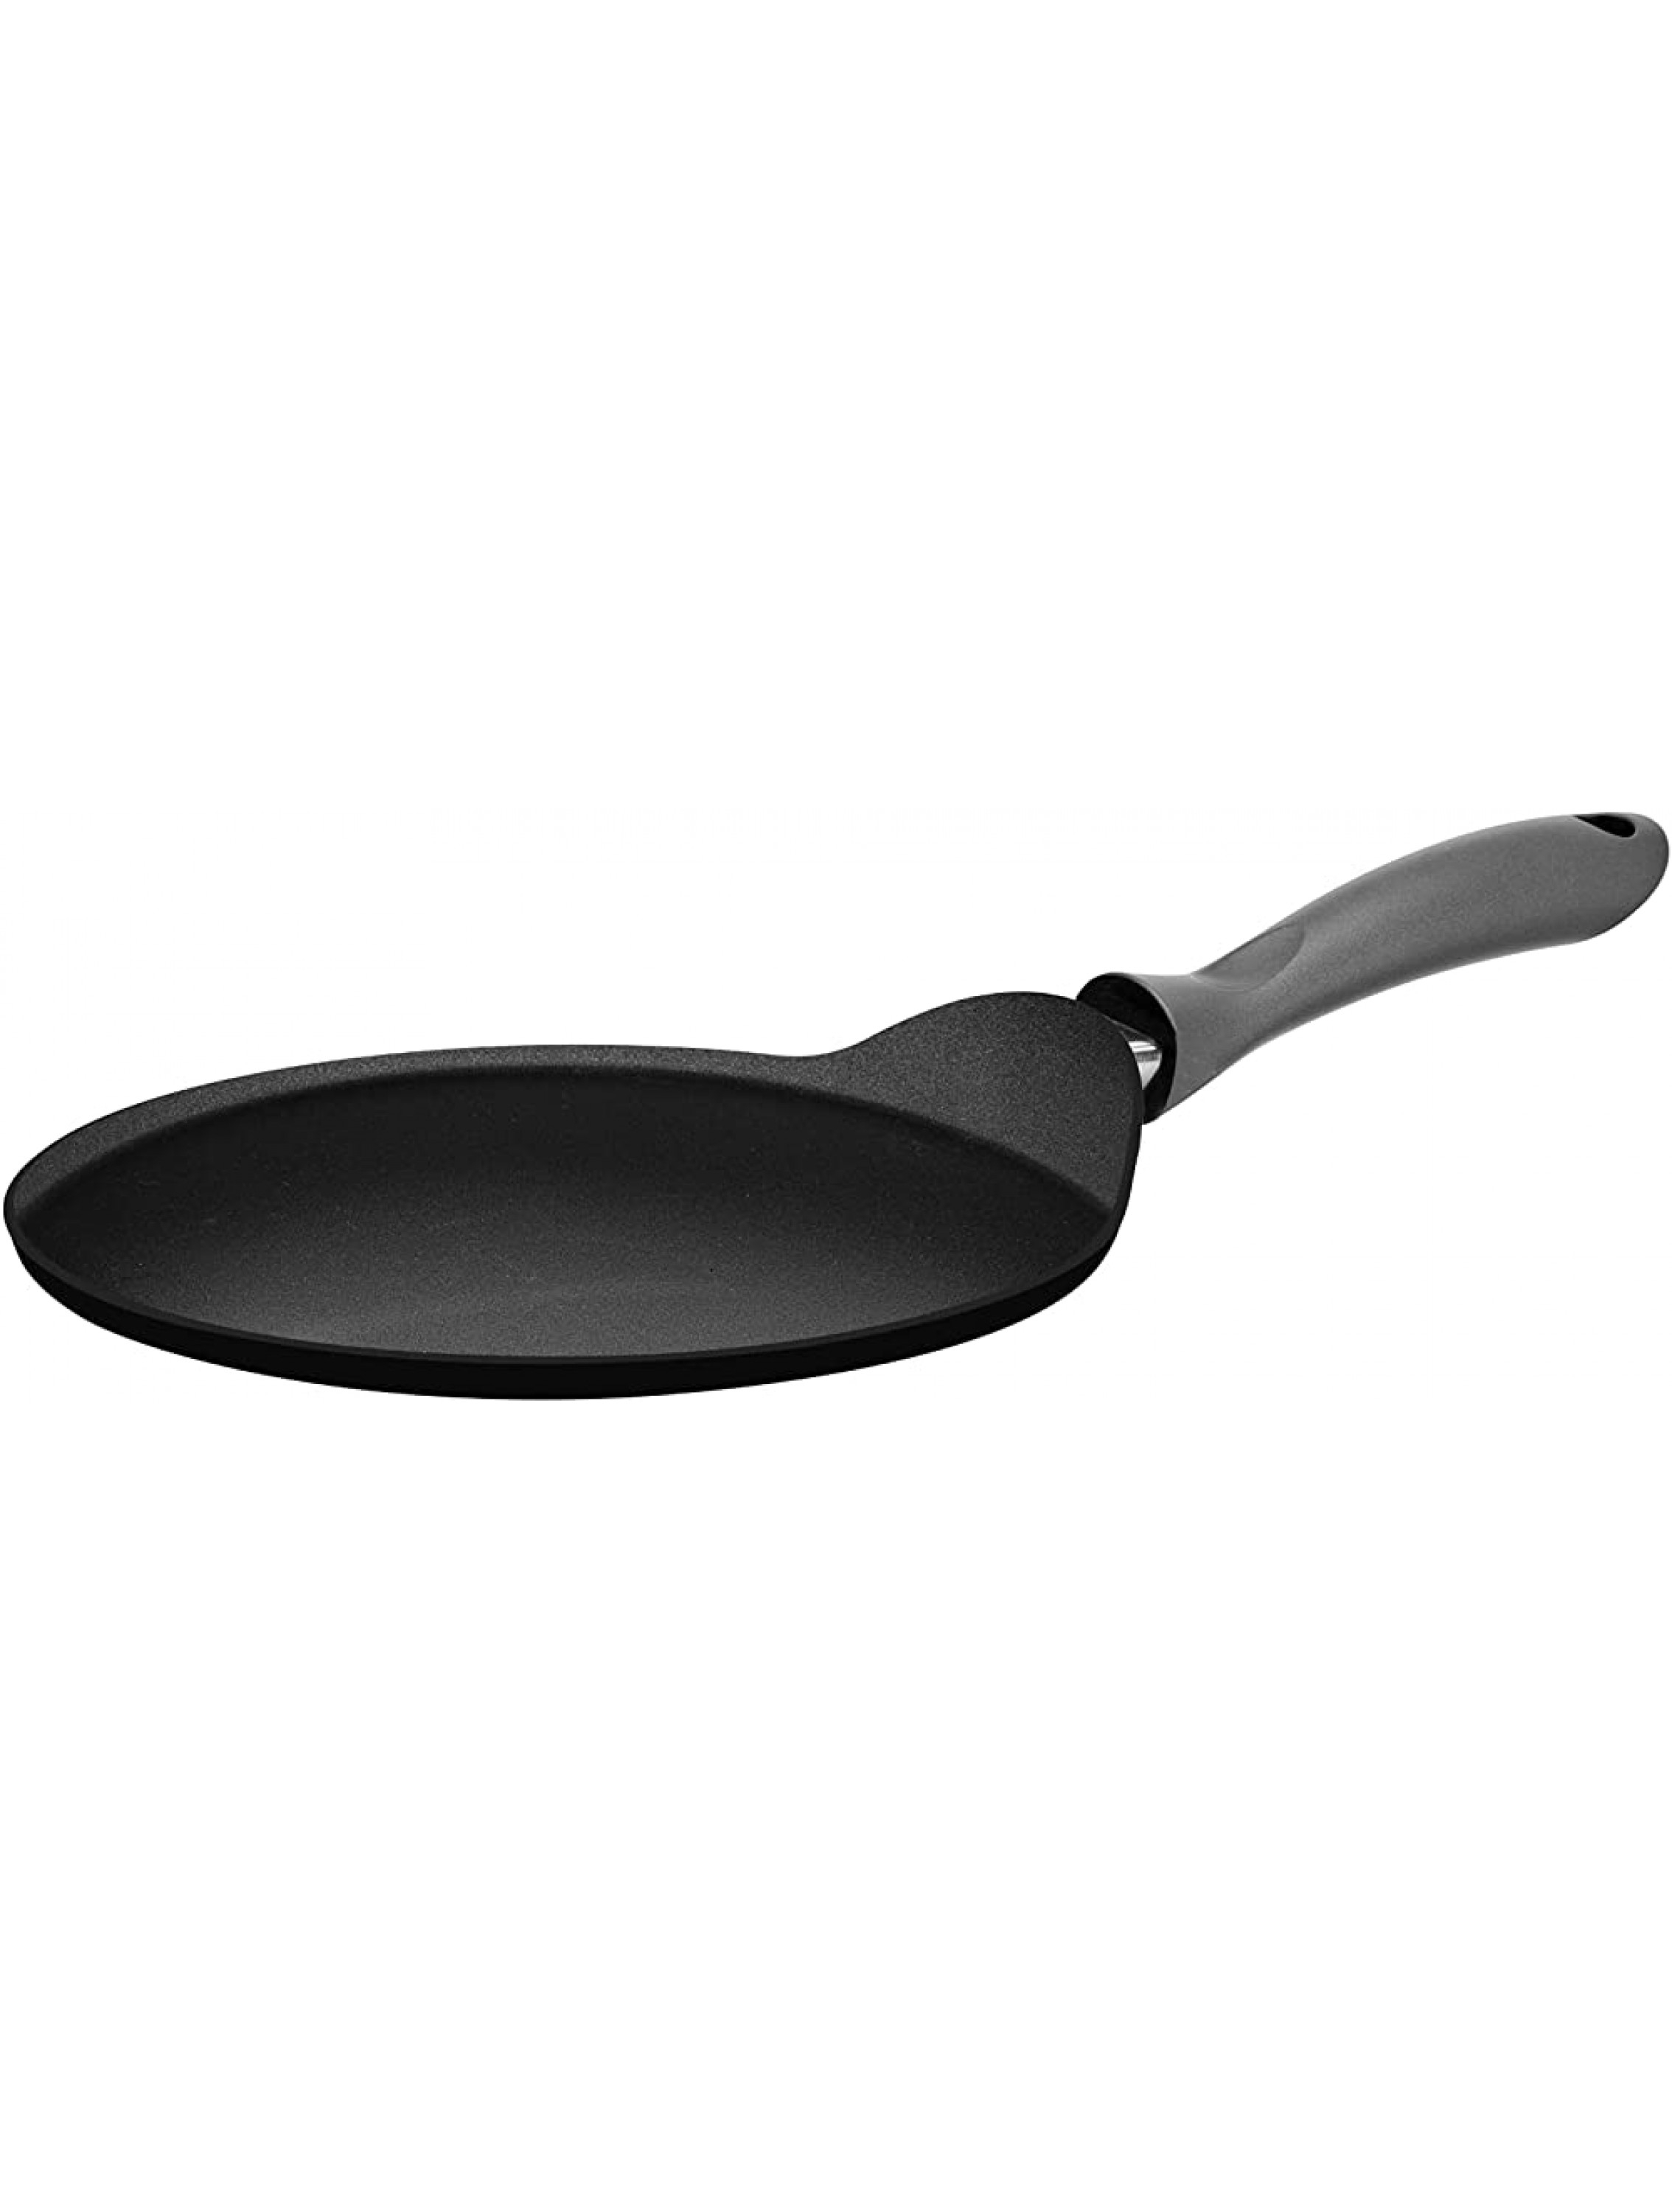 Hascevher Teflon Classic Nonstick 11 Inch Crepe Pan Griddle Cookware CR11 Black - B43TNWBCD